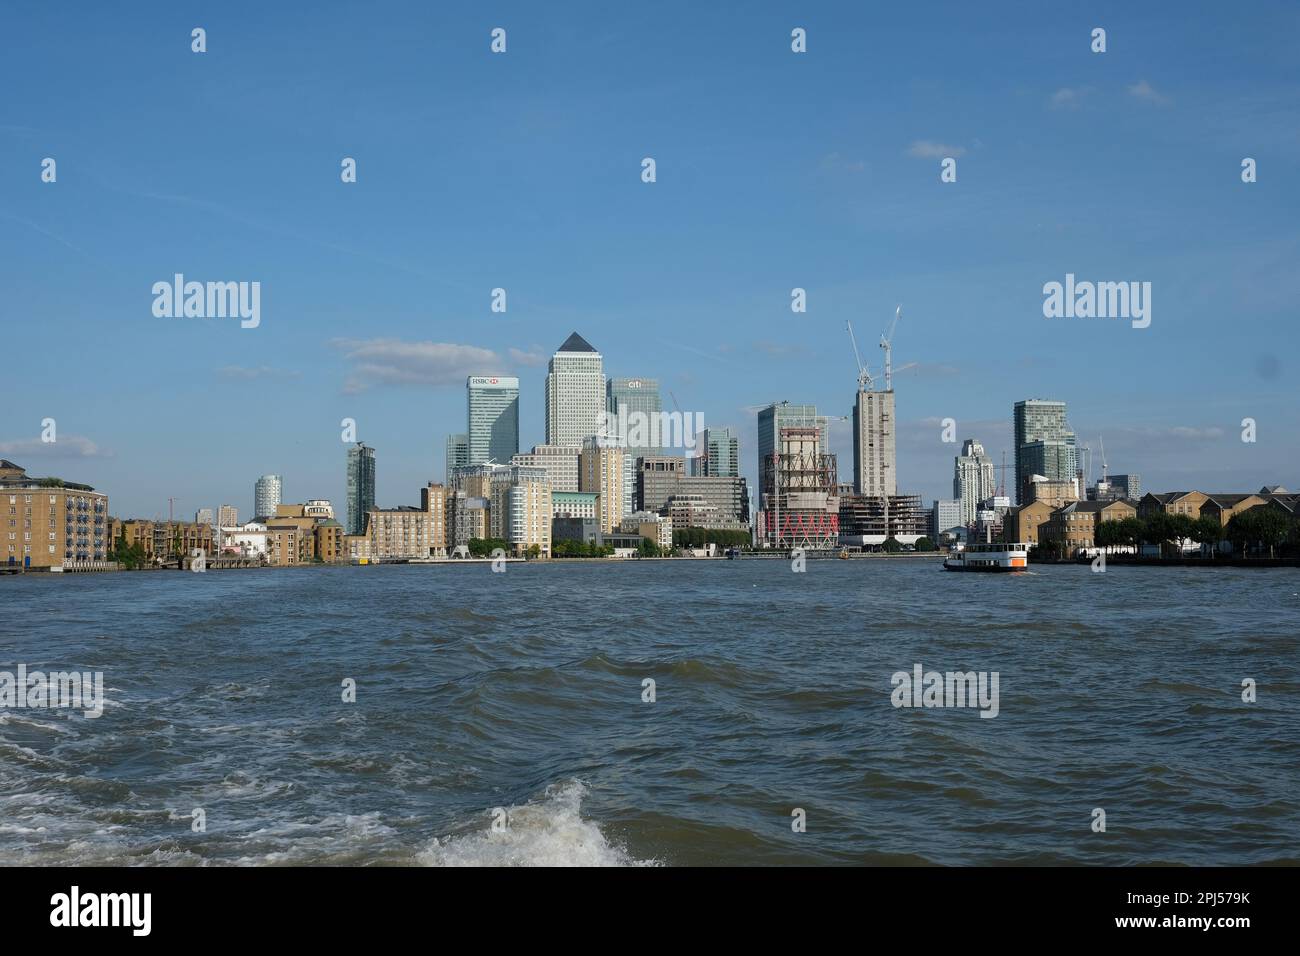 Edifici a Canary Wharf visti dal Tamigi a Londra, Regno Unito. Agosto 2017. Fotografo: Bryn Colton Foto Stock